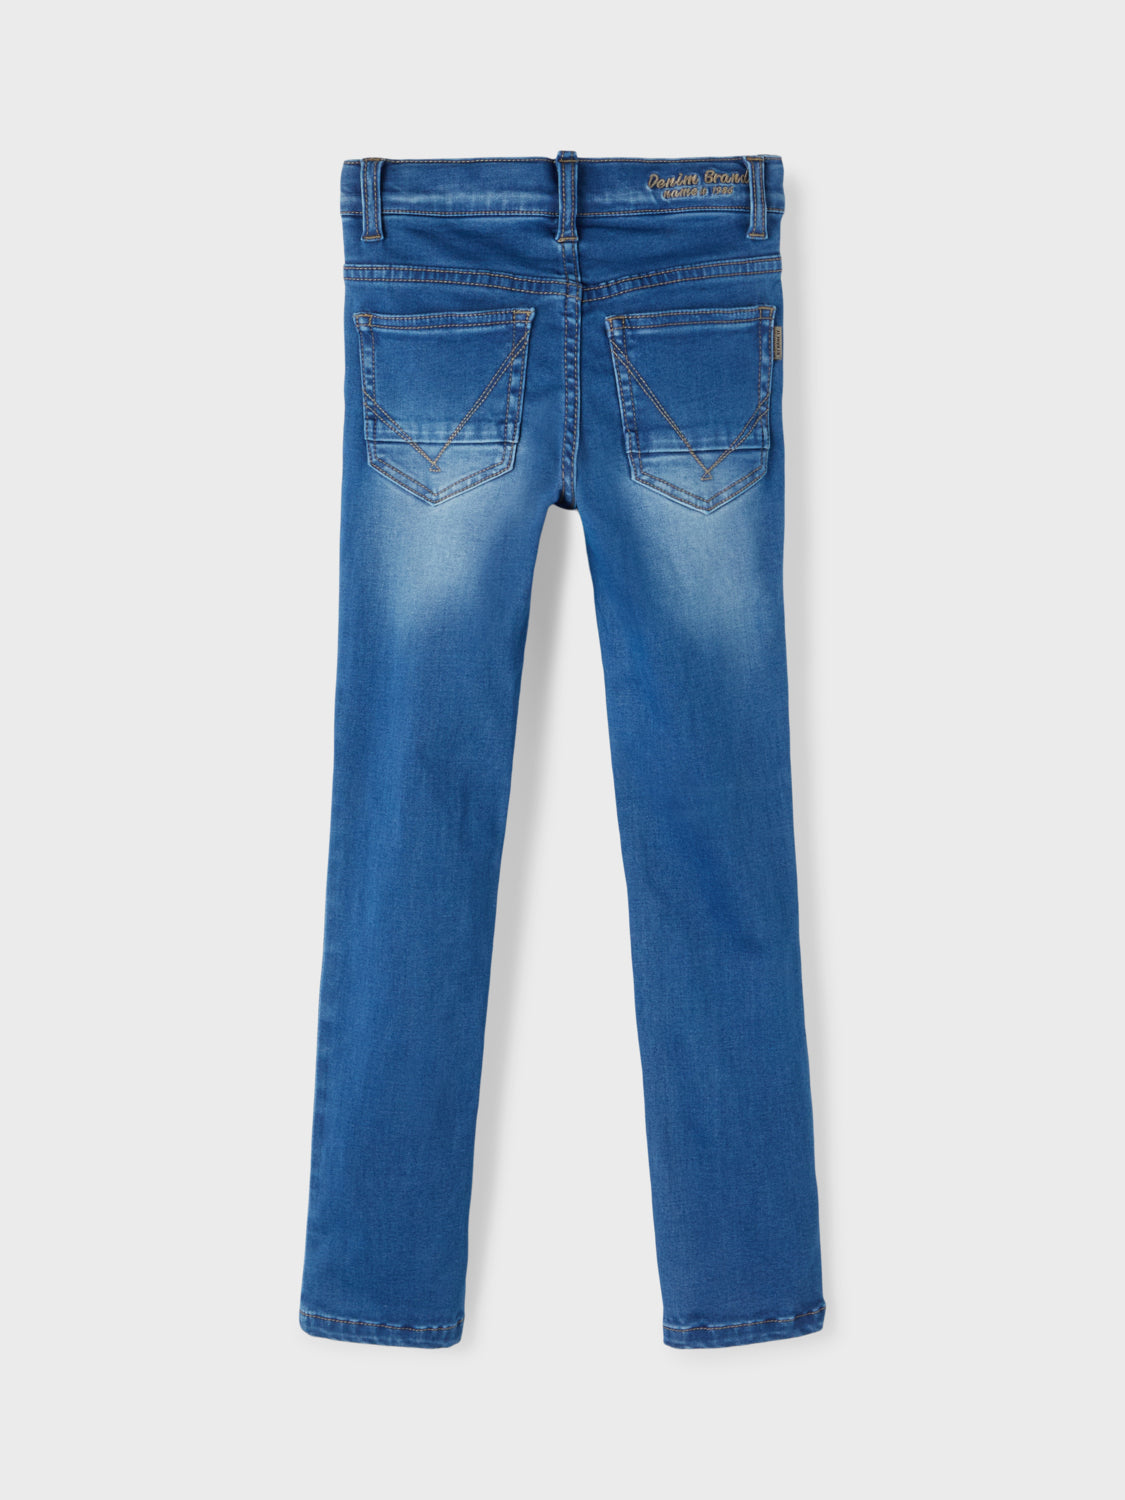 NKMTHEO Jeans It – Name Blue Medium Den Bosch Denim 